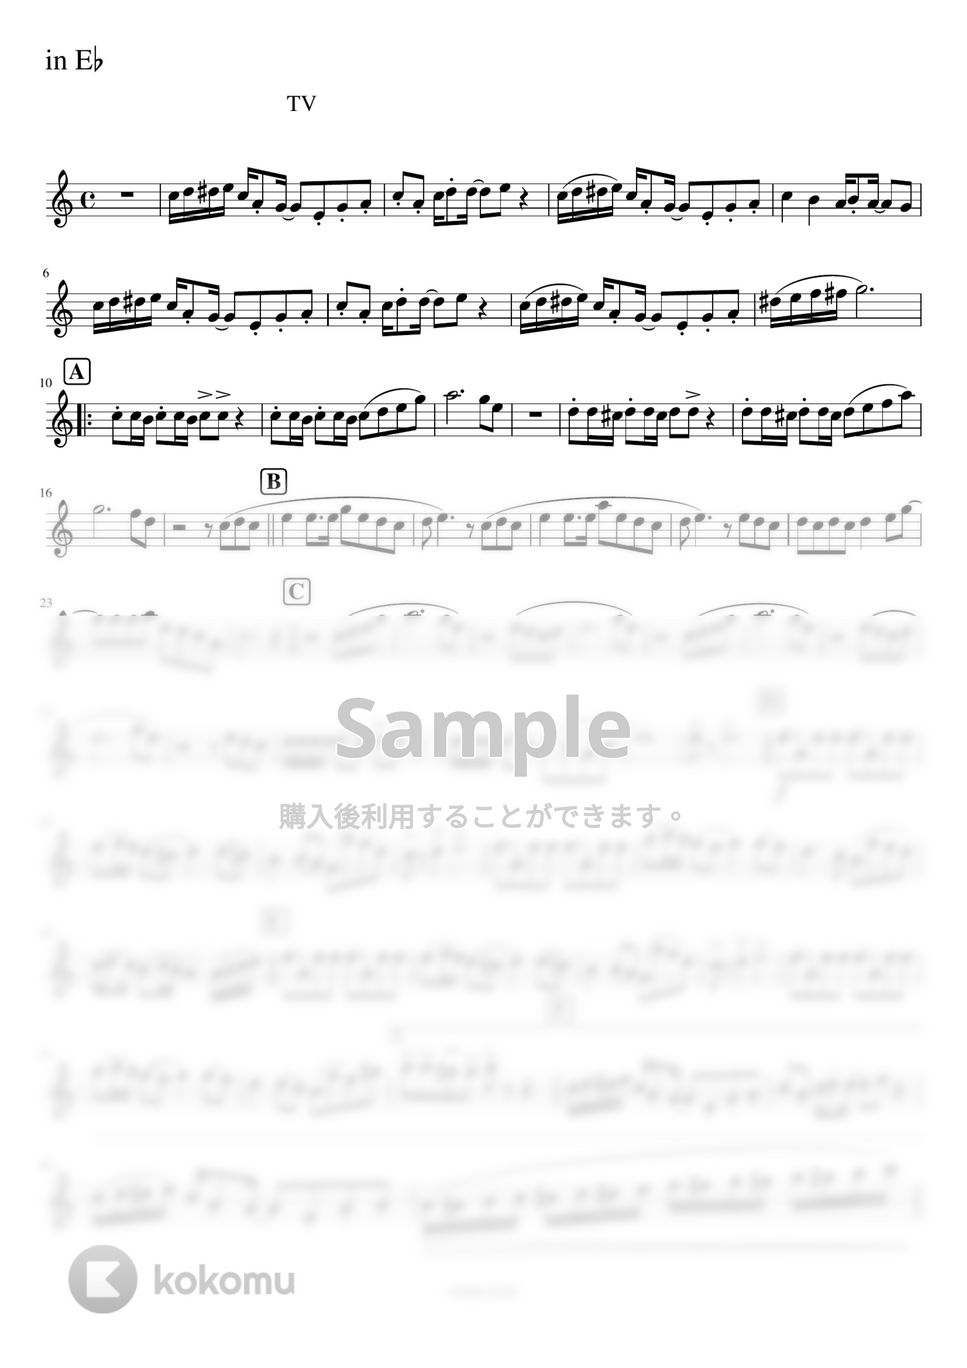 おジャ魔女どれみ - おジャ魔女カーニバル!!カラオケあり (E♭管 / Es管 / アルトサックス / バリトン) by orinpia music